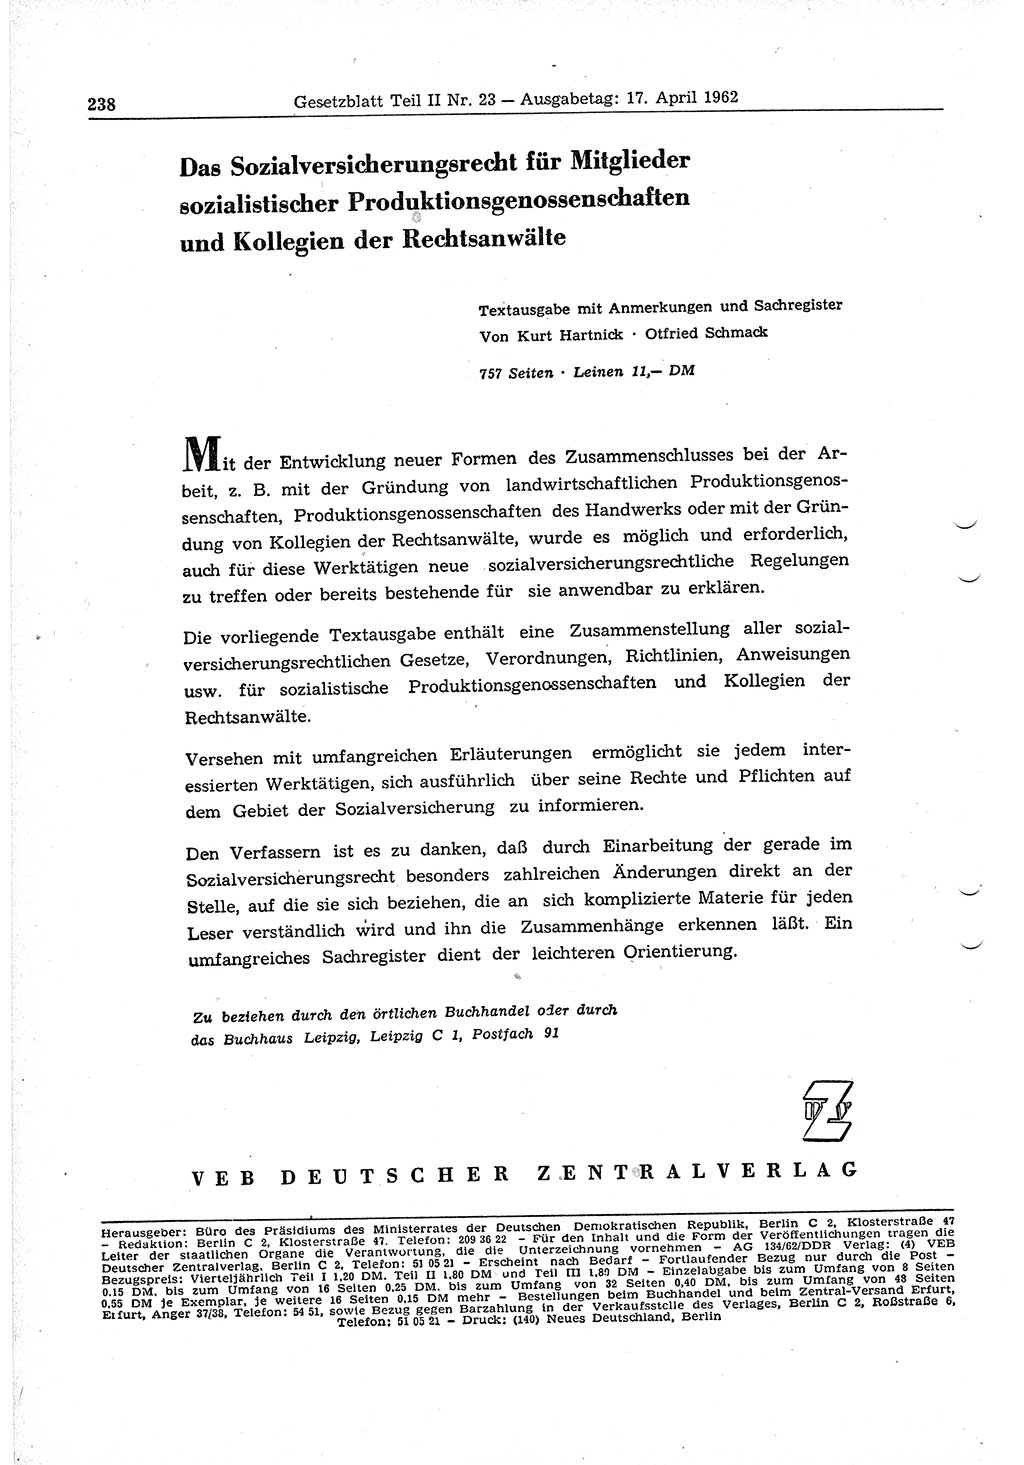 Gesetzblatt (GBl.) der Deutschen Demokratischen Republik (DDR) Teil ⅠⅠ 1962, Seite 238 (GBl. DDR ⅠⅠ 1962, S. 238)